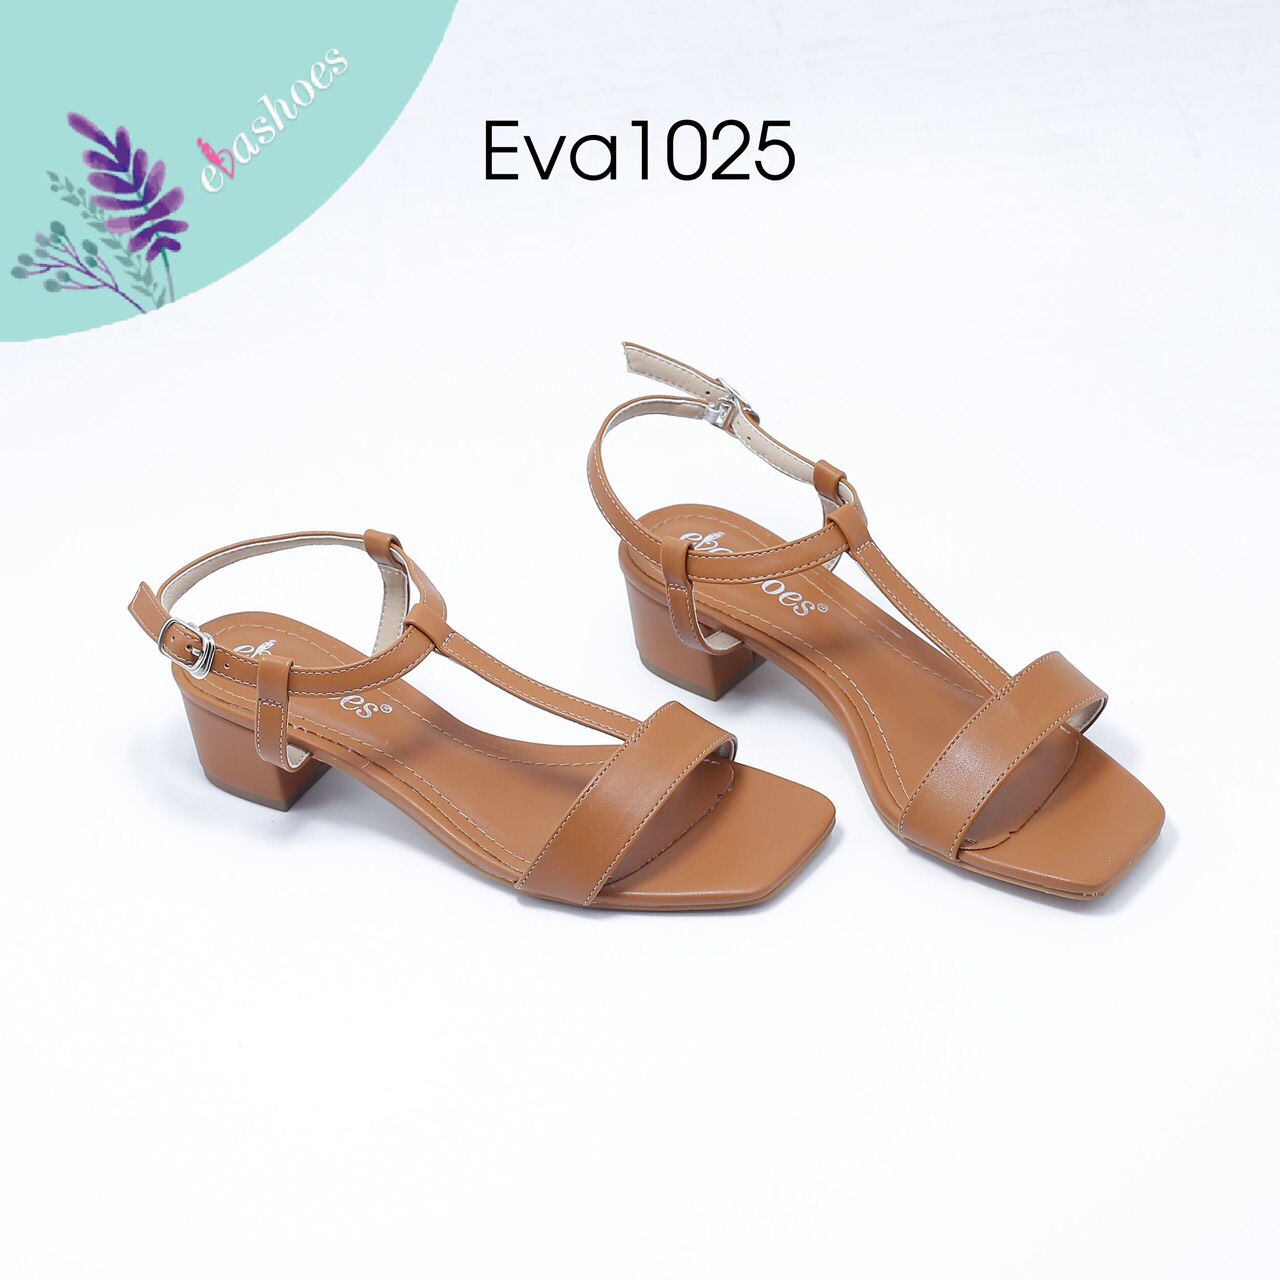 Sandal cao gót EVA1025